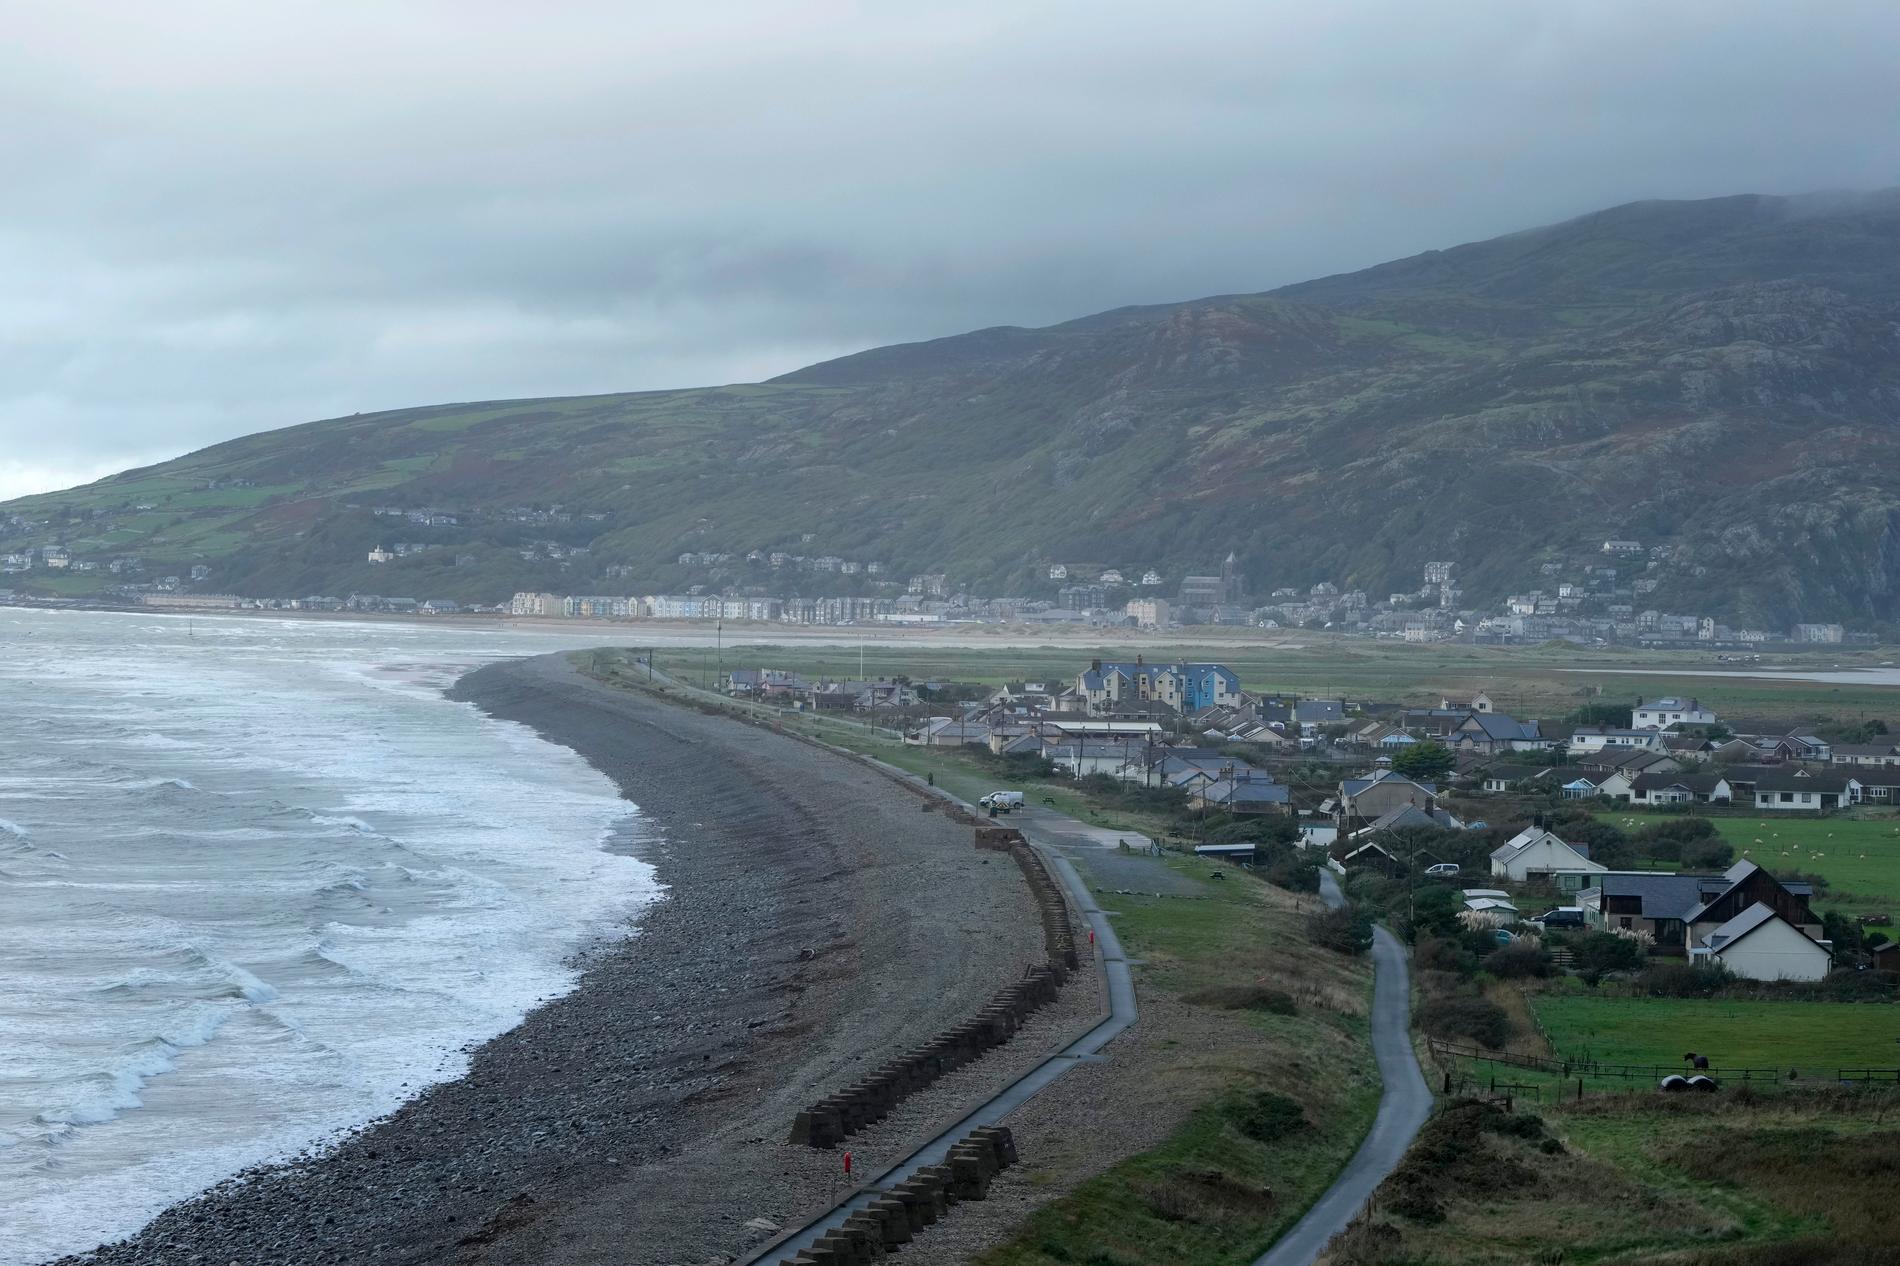 Byn Fairbourne i Wales är hårt drabbad av klimatförändringarna som lett till höga havsnivåer och kraftiga stormar i området. 